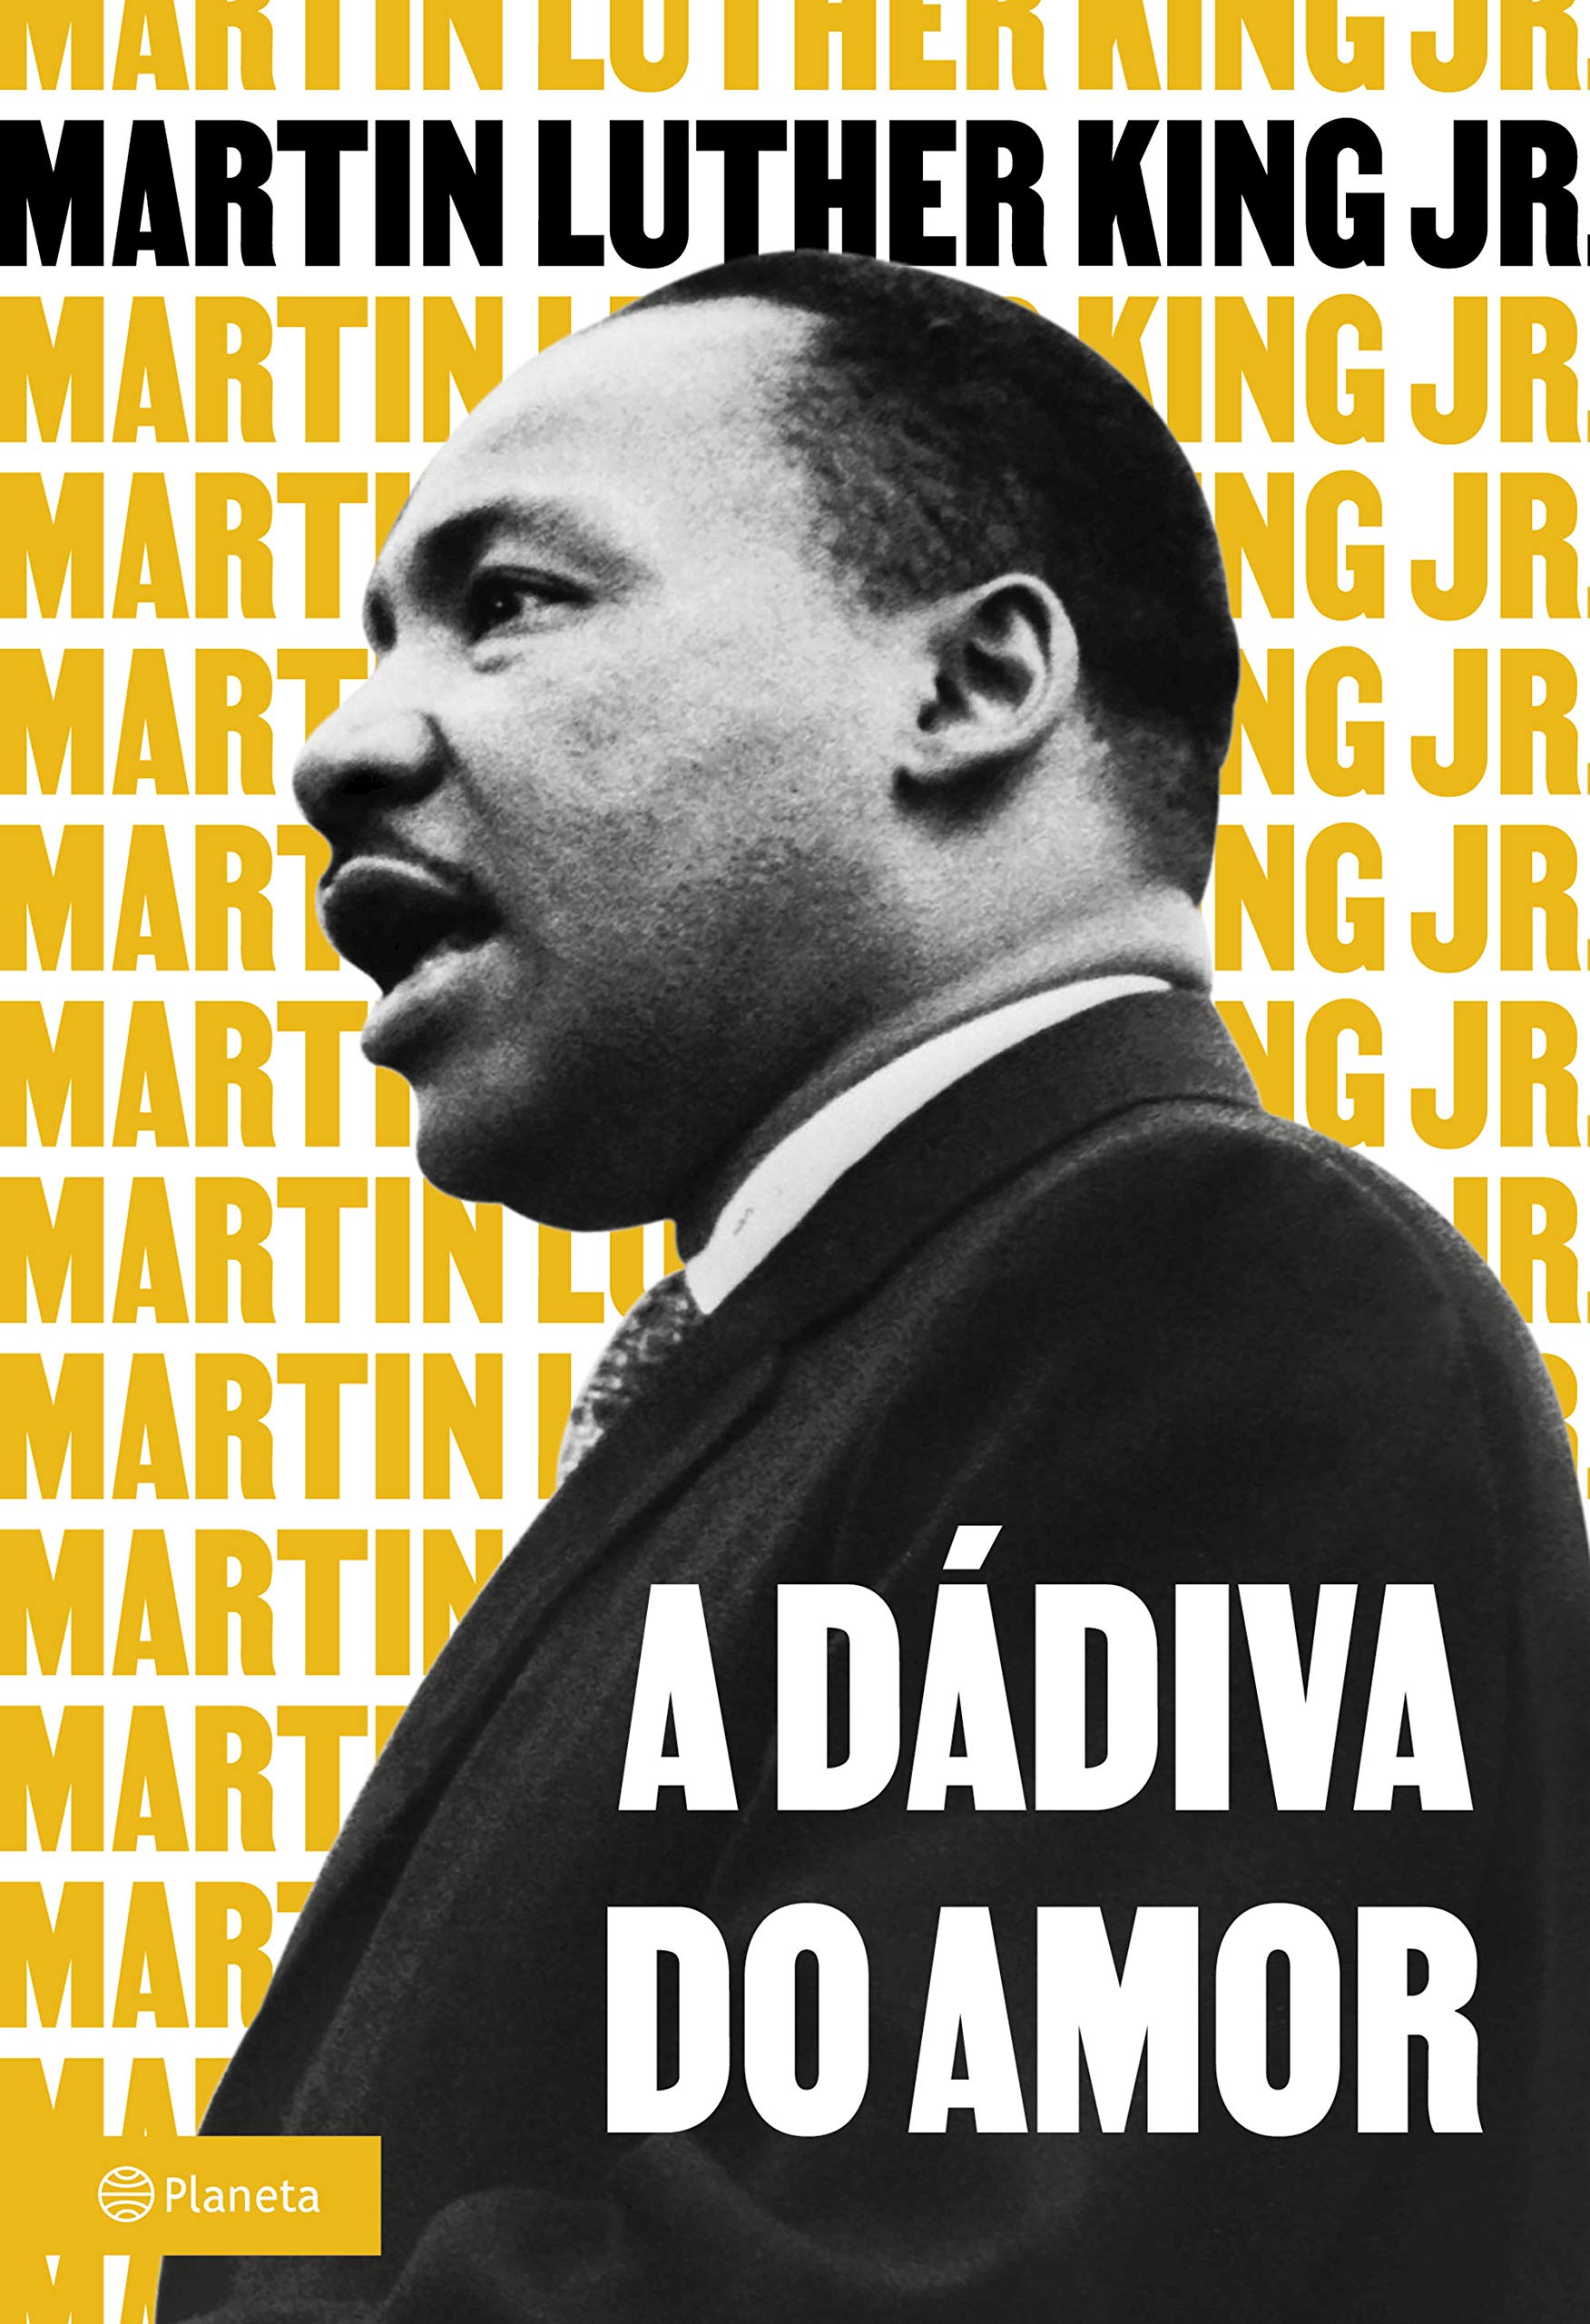 Livro 'A Dádiva do Amor' por Martin Luther King Jr.